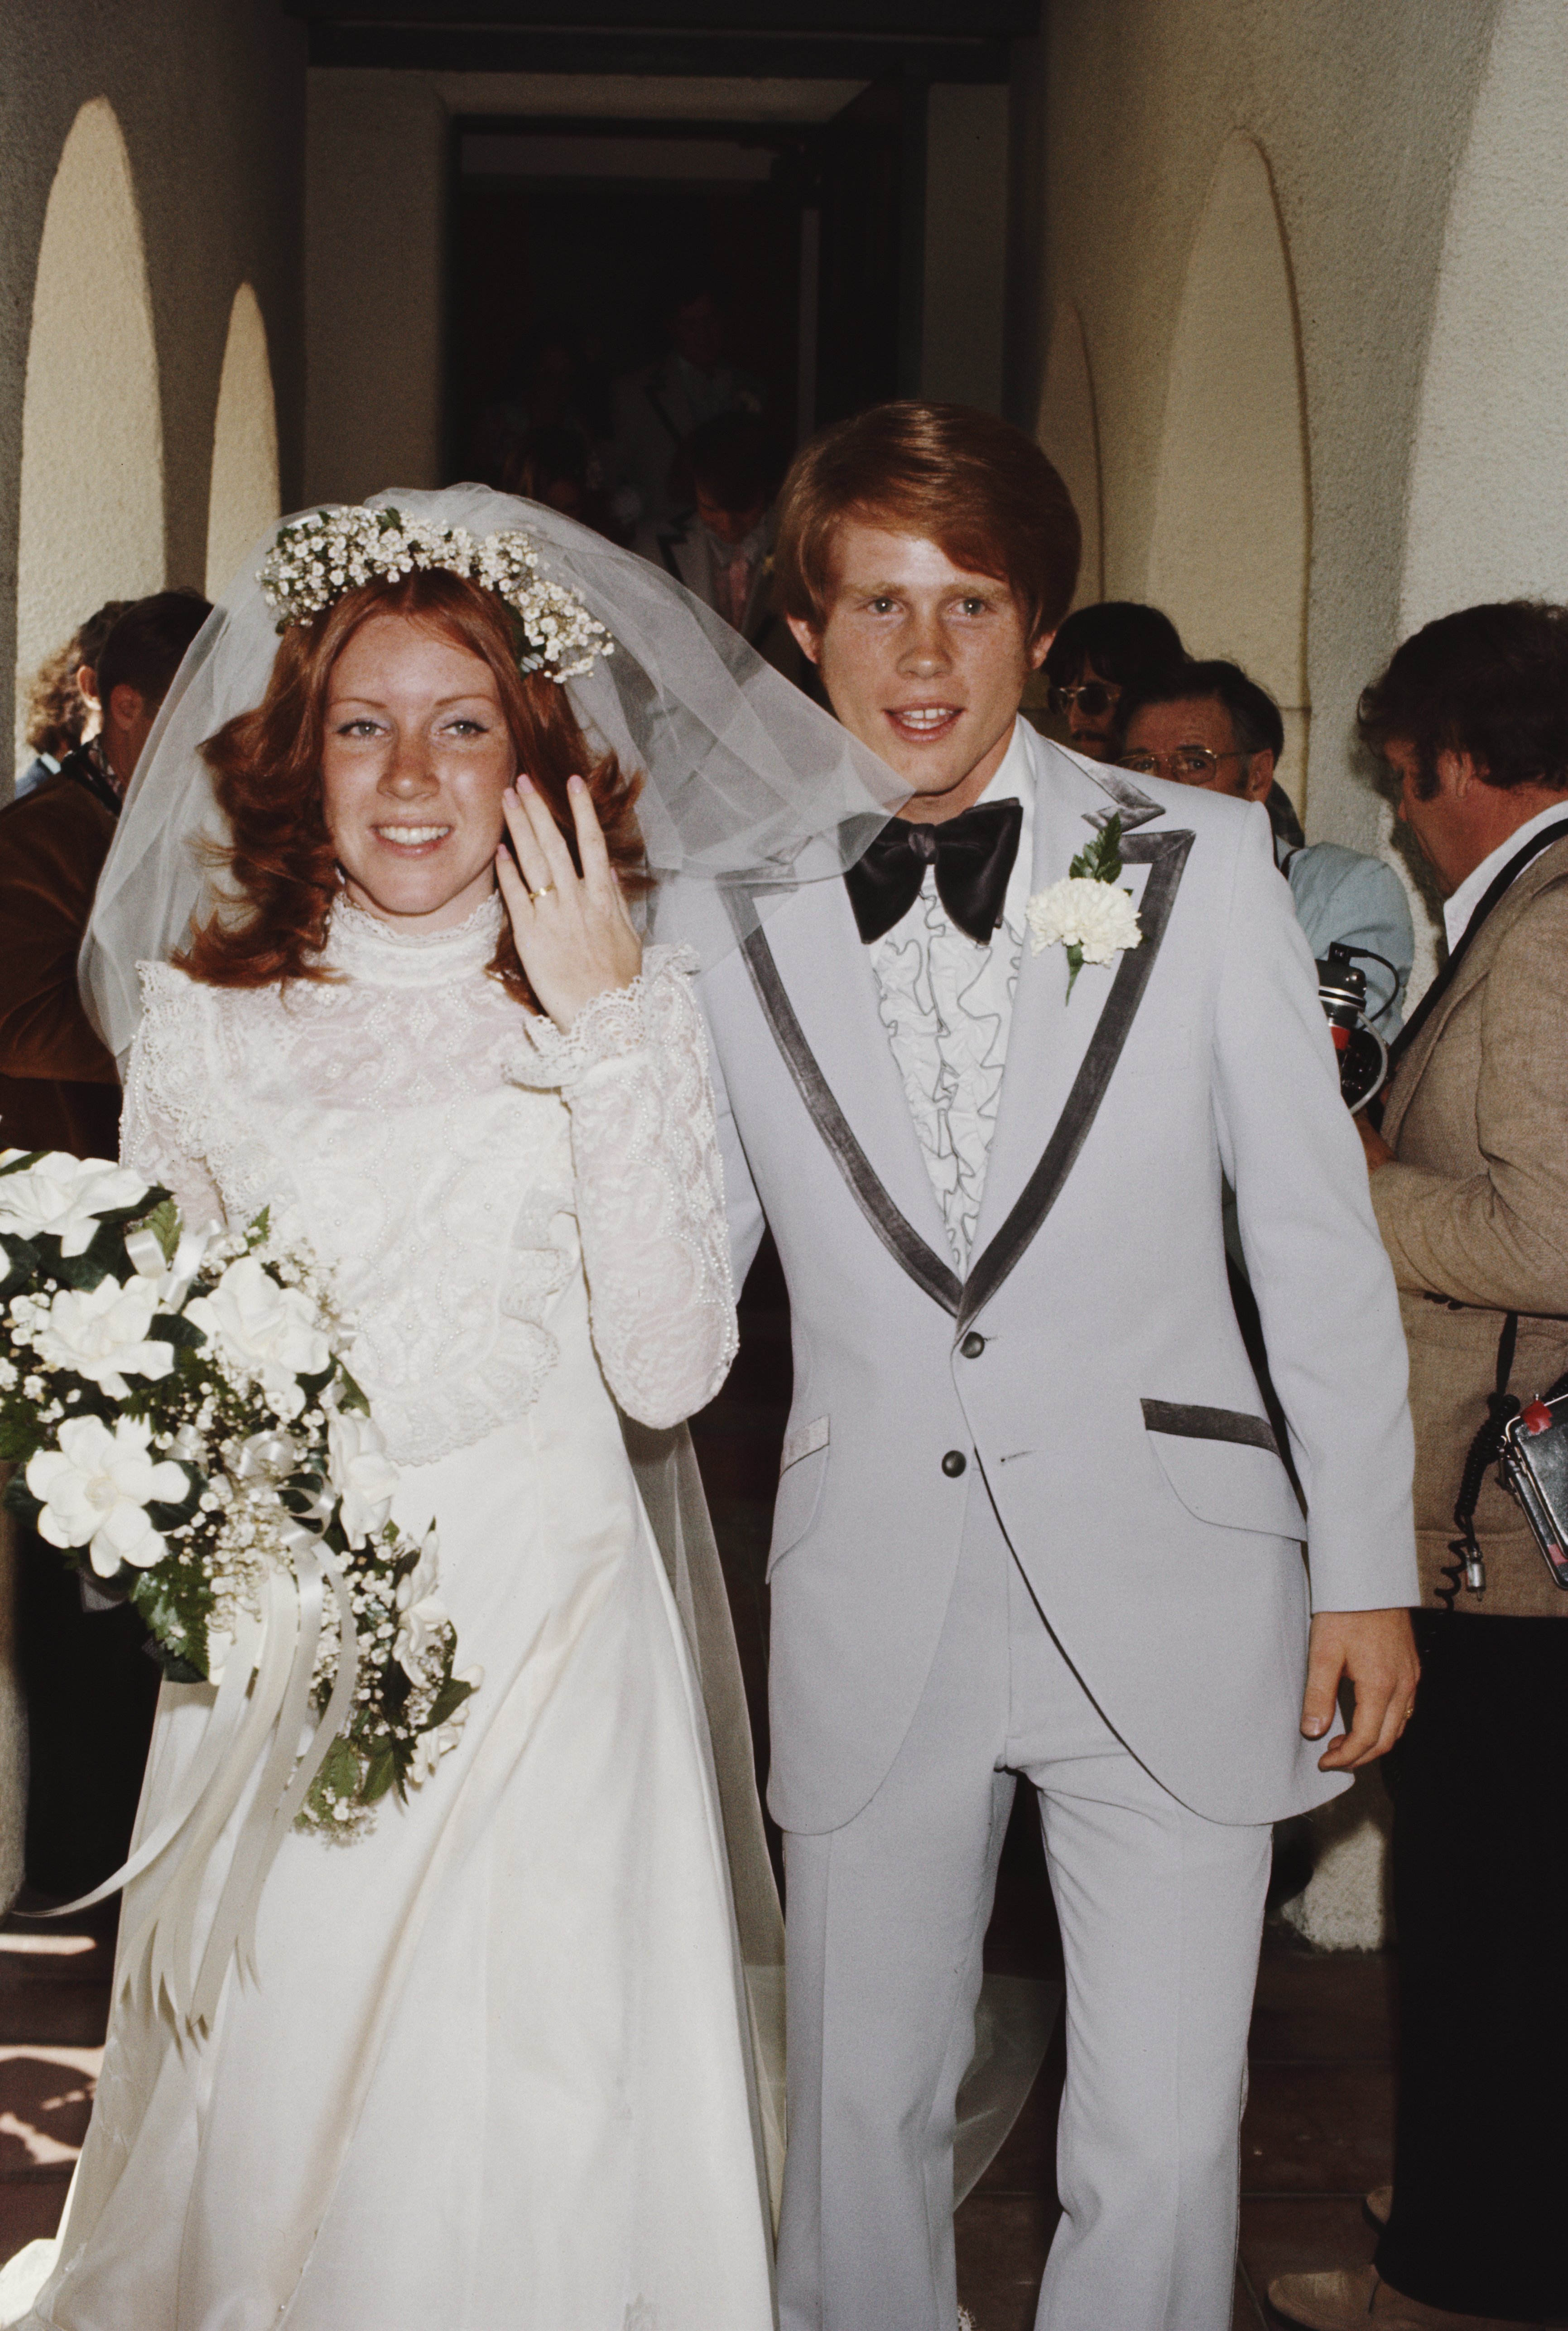 L'acteur américain Ron Howard épouse Cheryl Alley à l'Église méthodiste unie de Magnolia Park à Burbank, en Californie, le 7 juin 1975. | Source : Getty Images